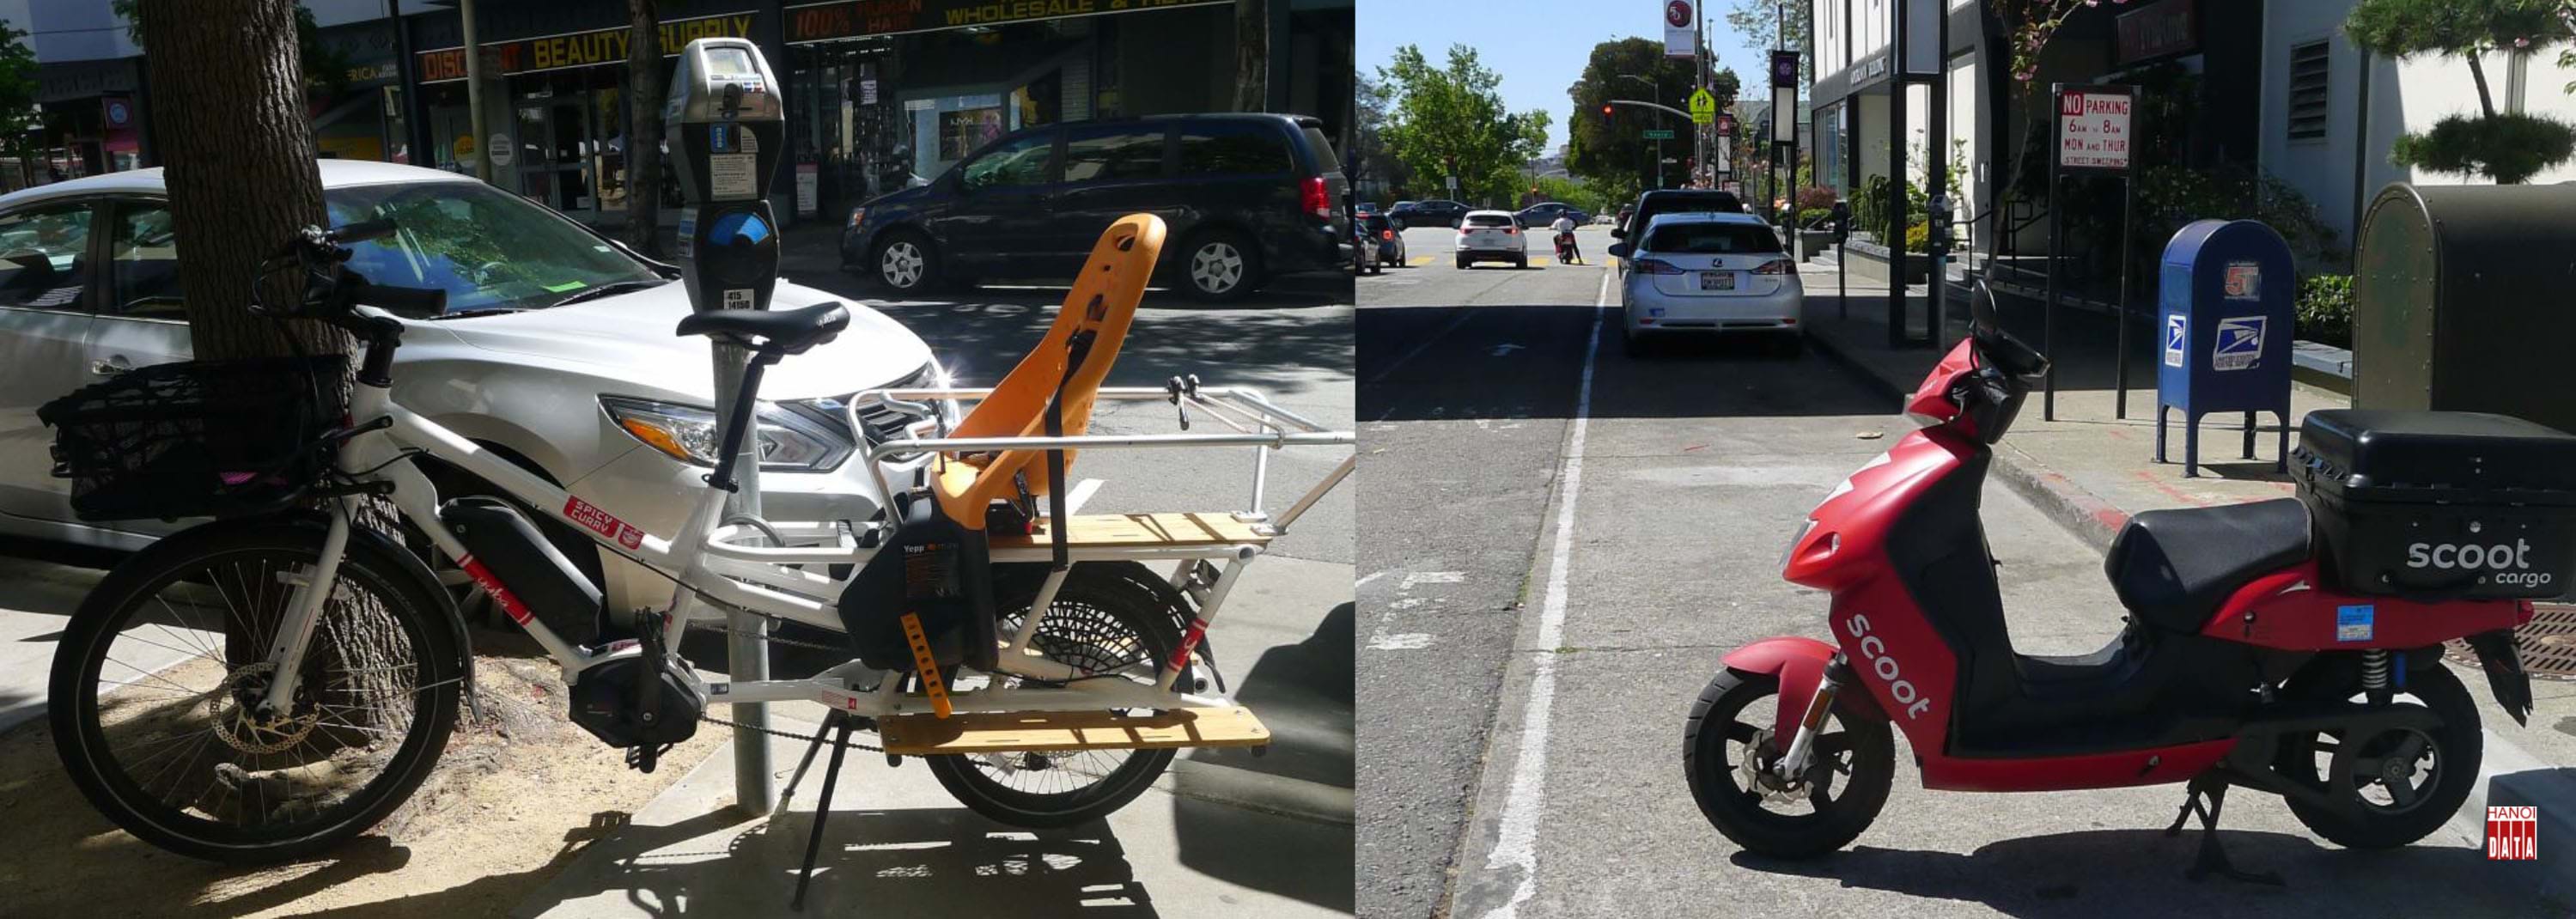 Tại  San Francisco (Mỹ): Bên cạnh cột thu phí đỗ xe tự động, một chiếc xe đạp trợ lực điện chở hàng và trẻ em được đỗ miễn phí trên vỉa hè. Bãi đỗ xe tự động hoàn toàn, không một bóng người quản lý. Chỉ vài dòng thông báo: ô tô và xe máy không dám đỗ vào giờ các xe vệ sinh  hoạt động.